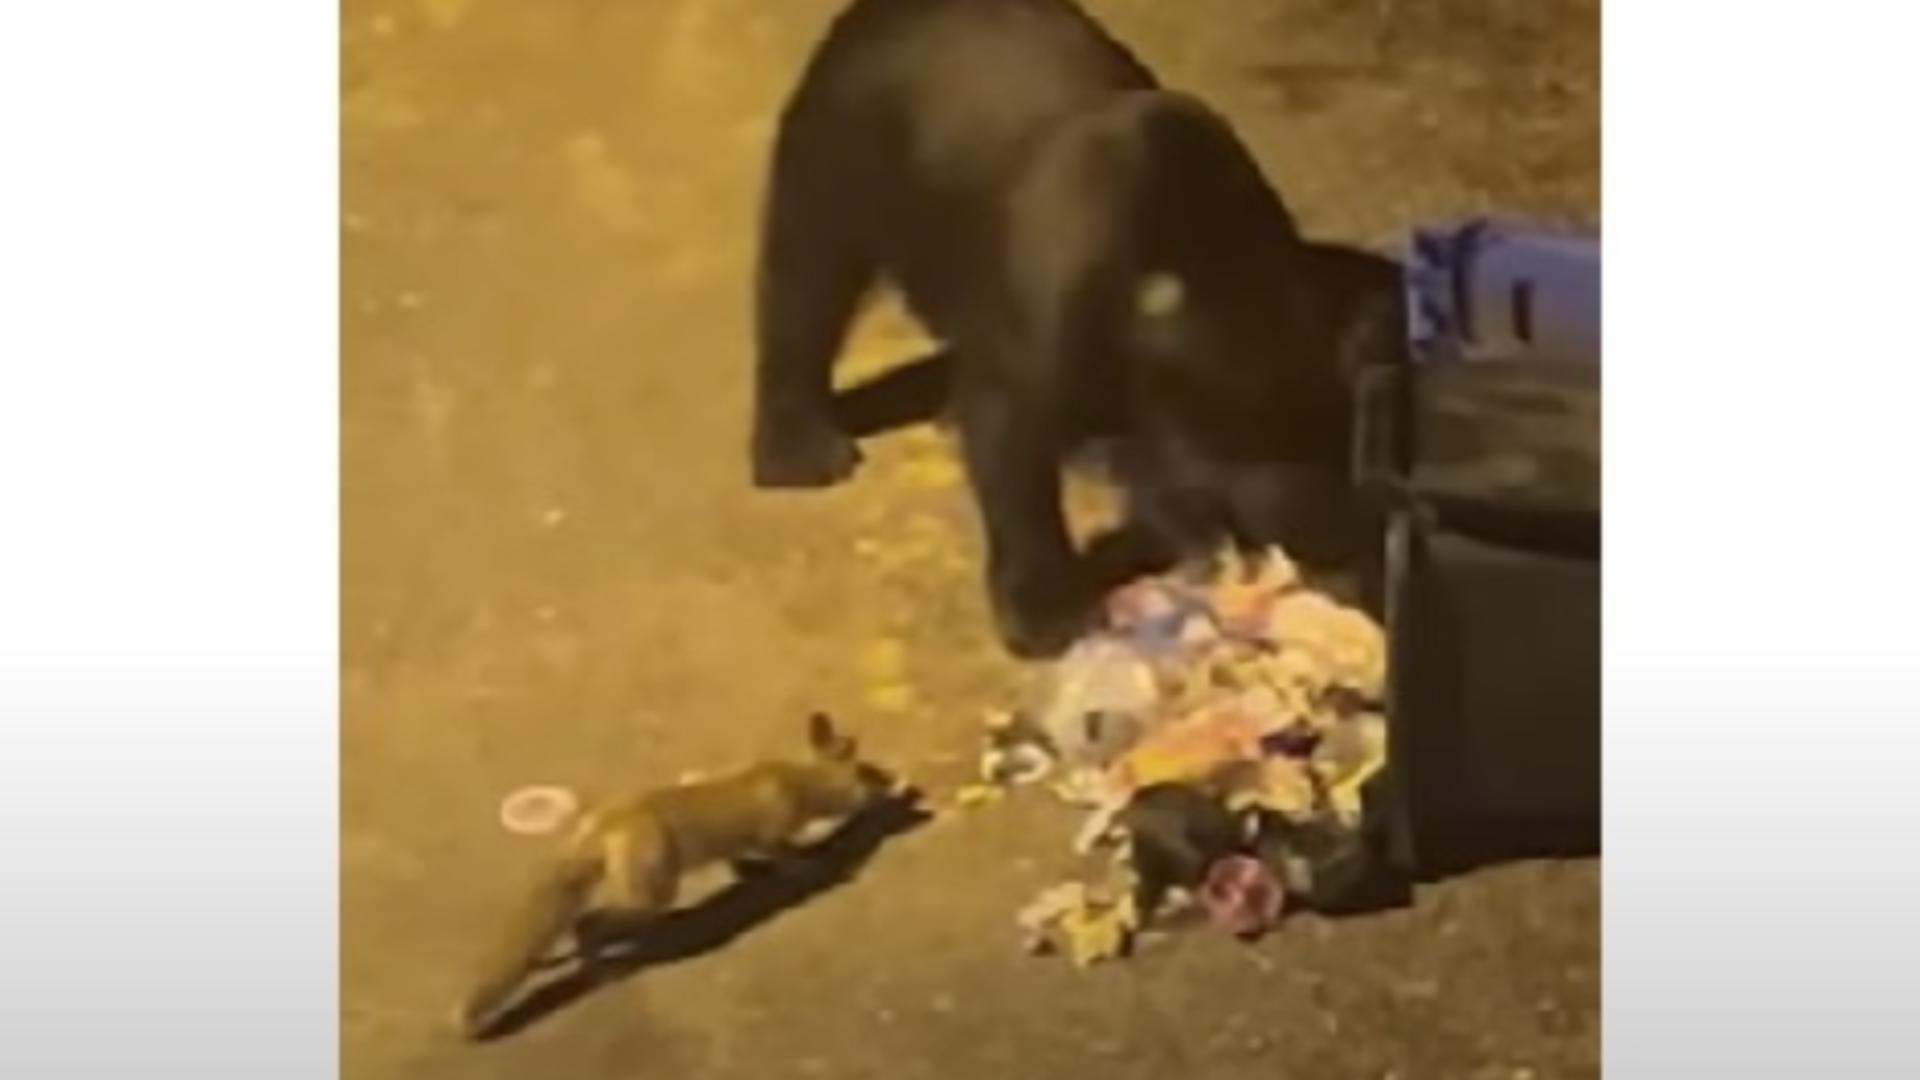 Ursul nu mai e păcălit de vulpe - Își împart mâncarea din pubele de gunoi, pe o stradă din Păltiniș - Imagini virale